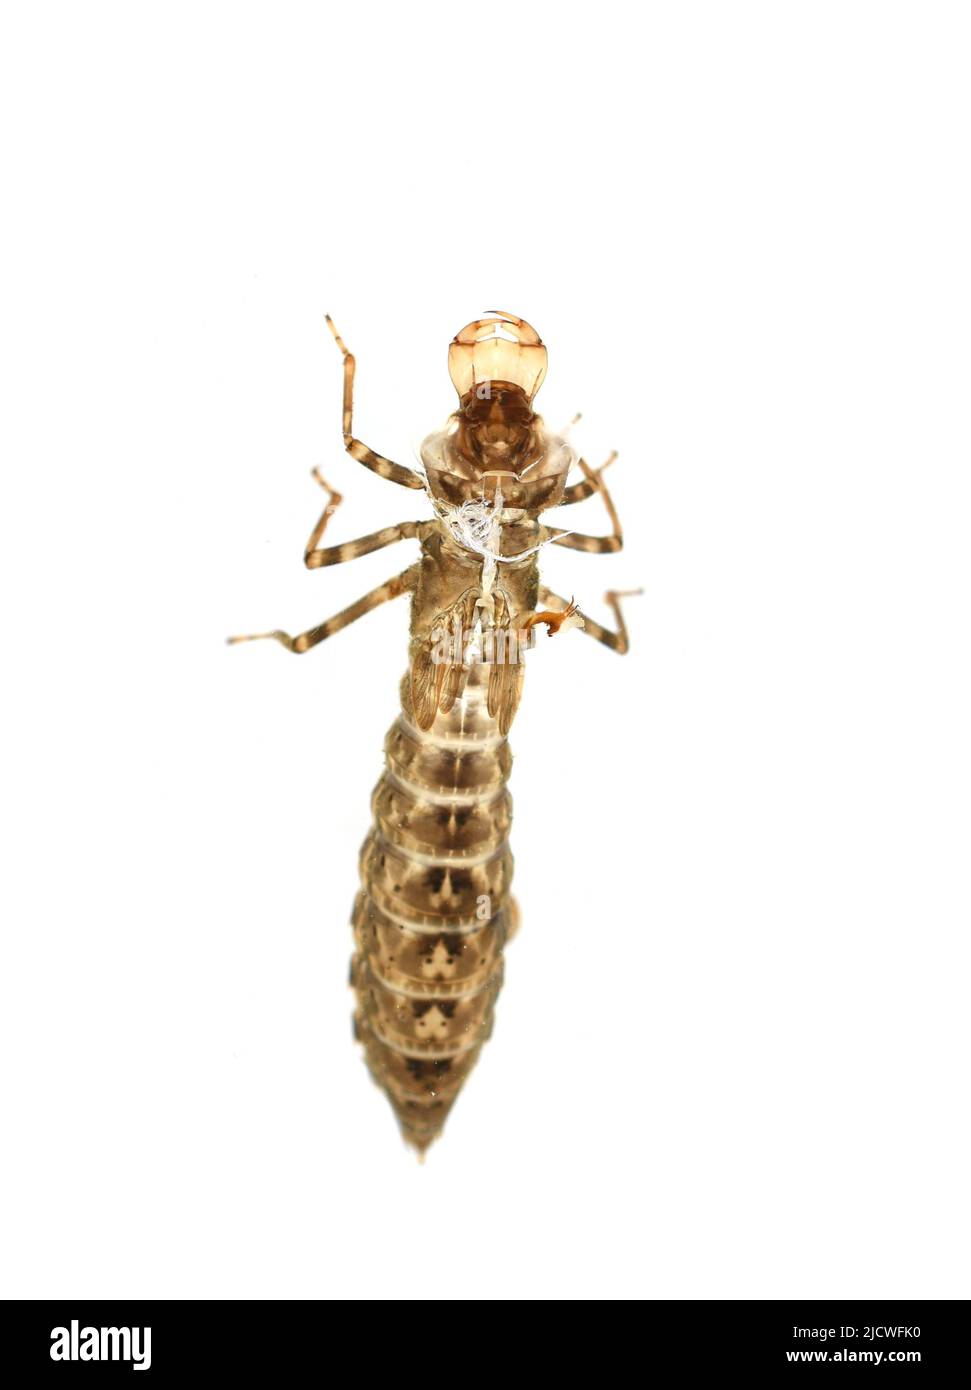 La peau vide de nymphe hantée d'une libellule émergée face arrière isolée sur fond blanc Banque D'Images